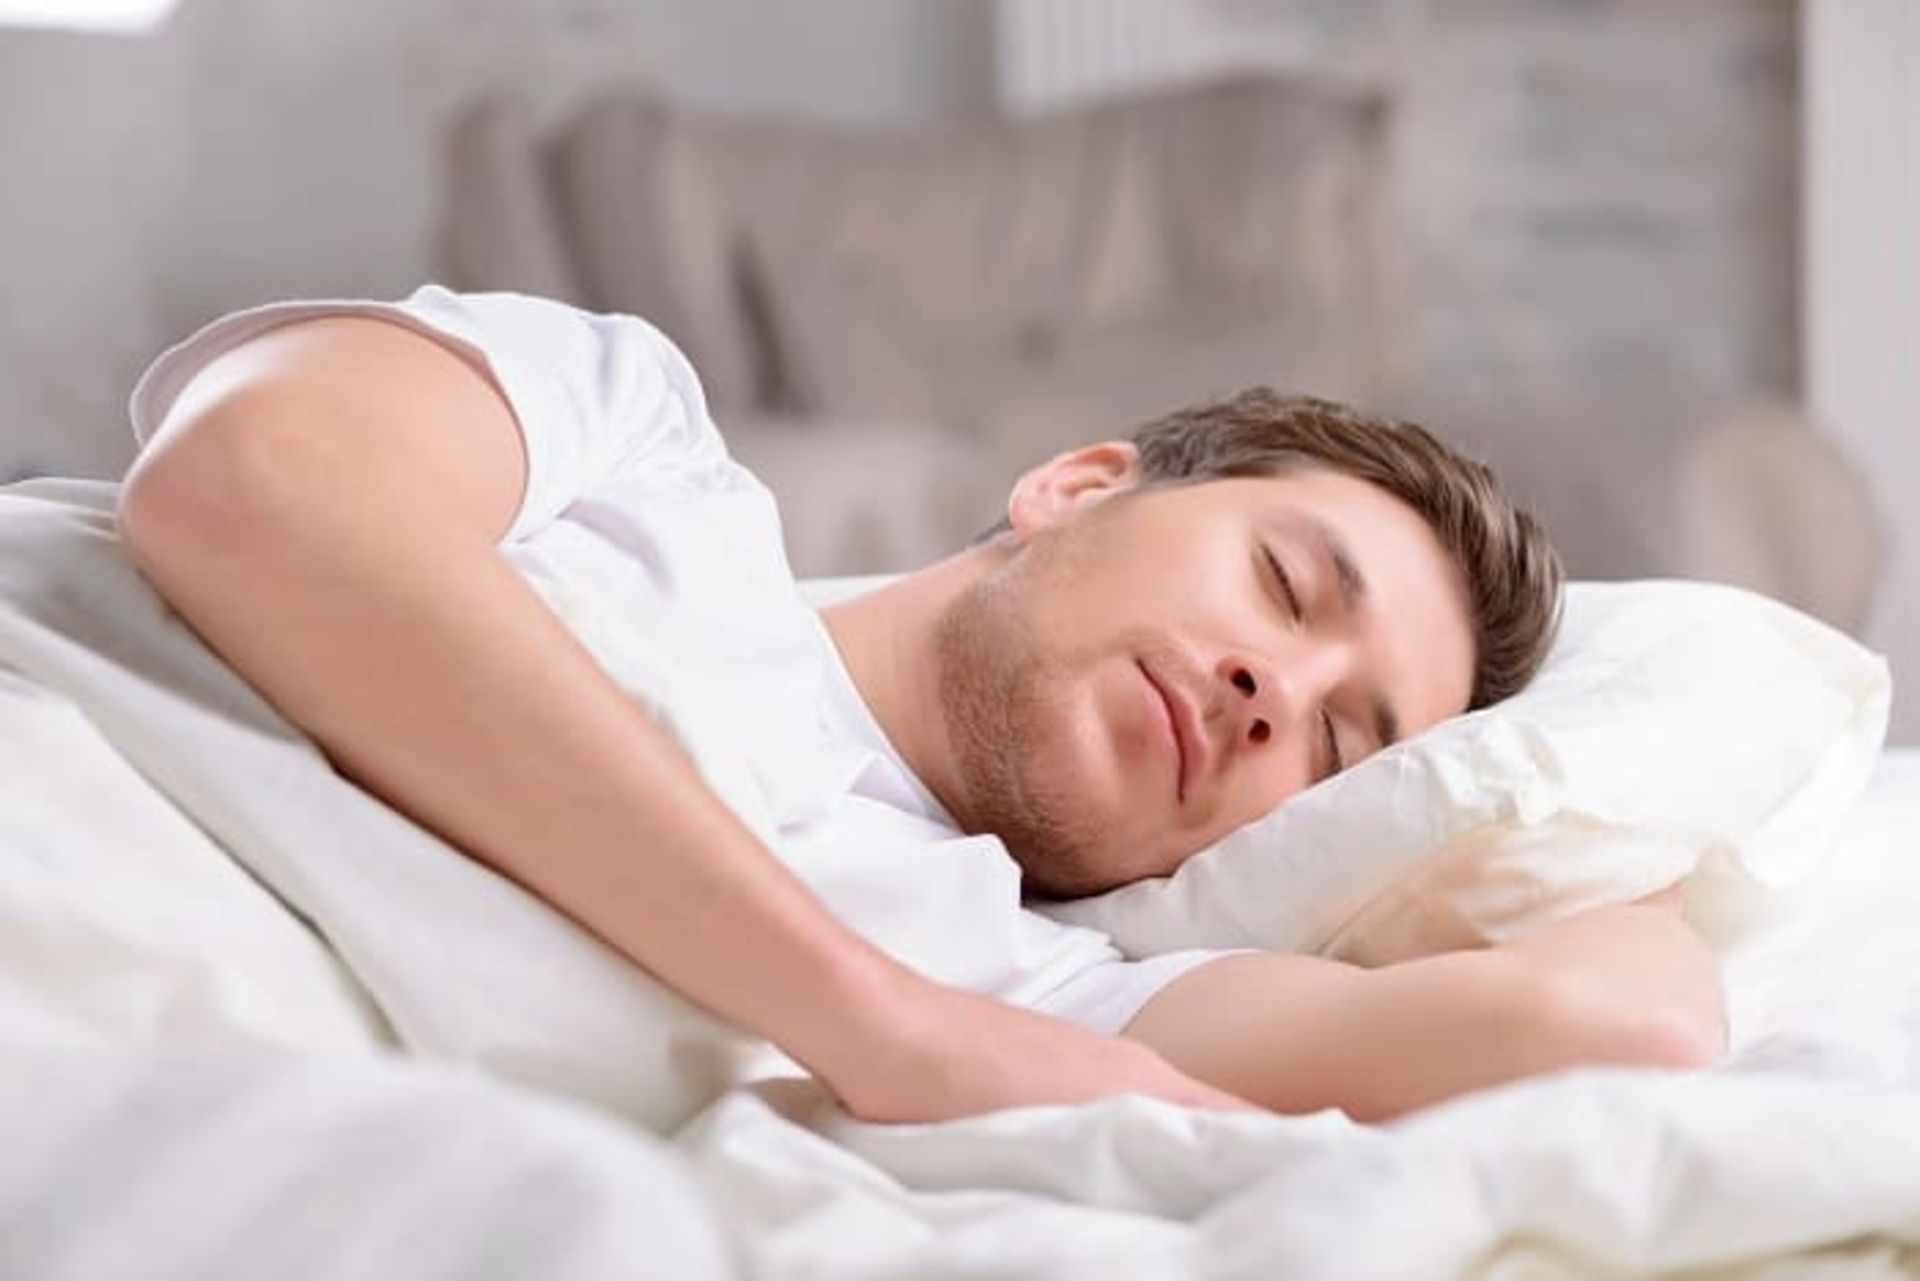 مرجع متخصصين ايران استفاده از بالش و تشك مناسب به هنگام خواب